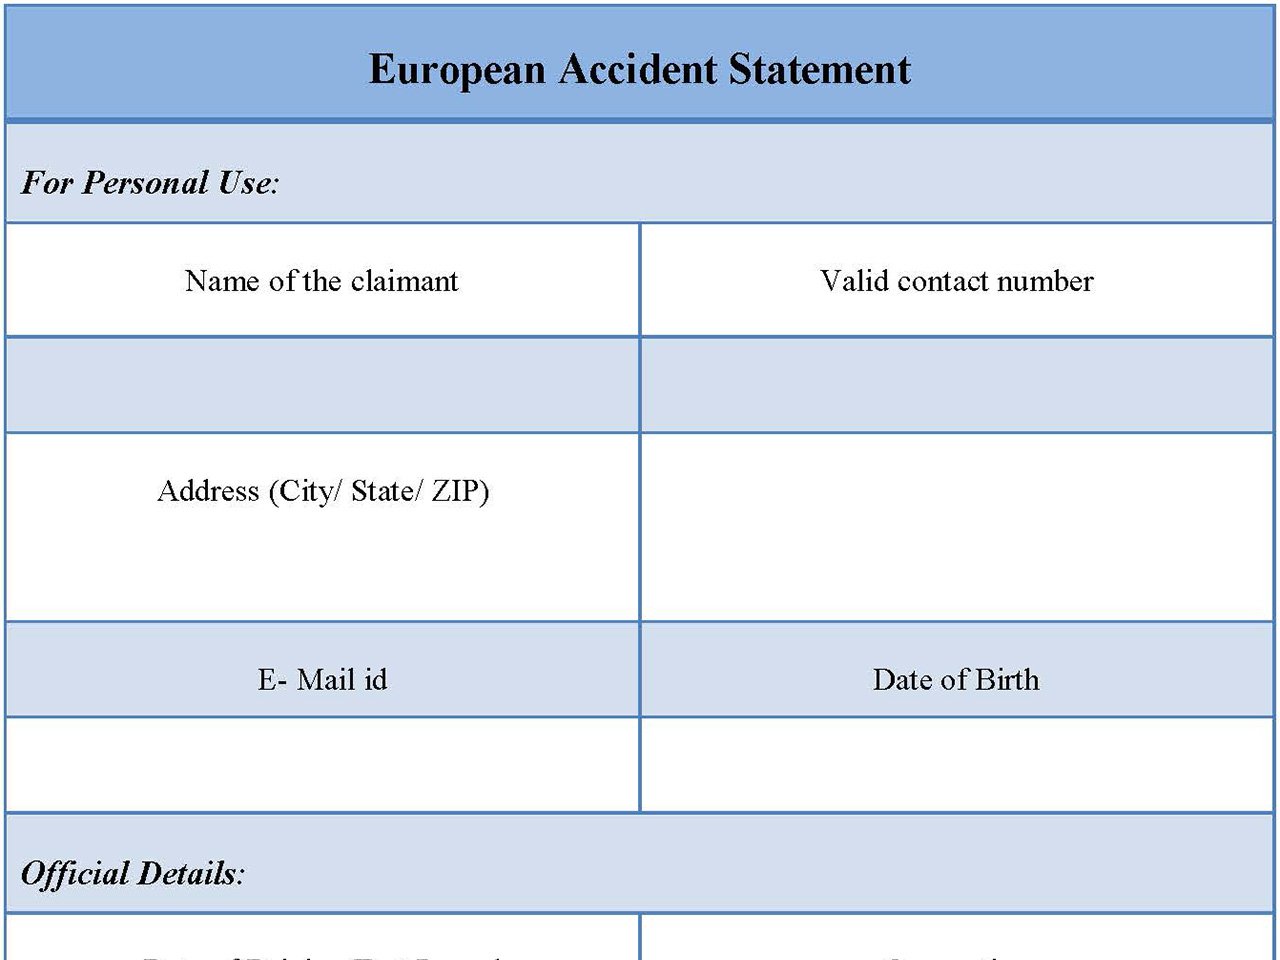 European Accident Statement Form